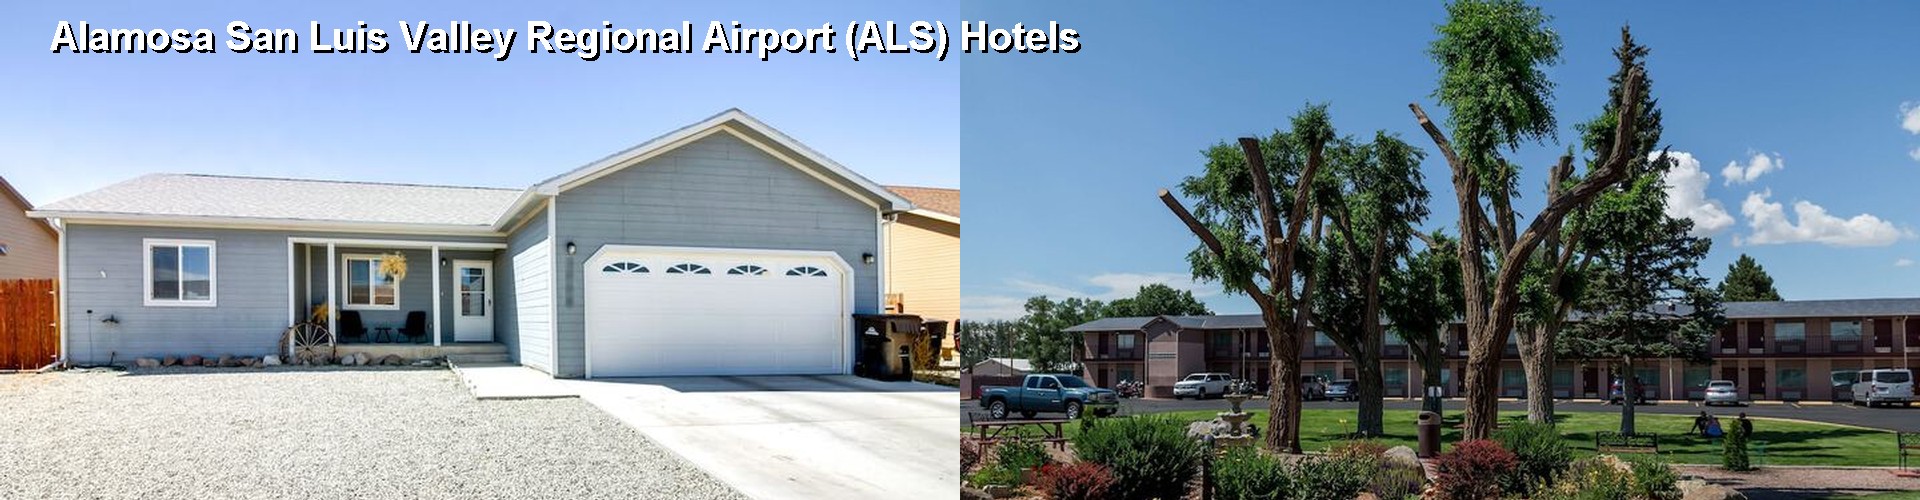 5 Best Hotels near Alamosa San Luis Valley Regional Airport (ALS)